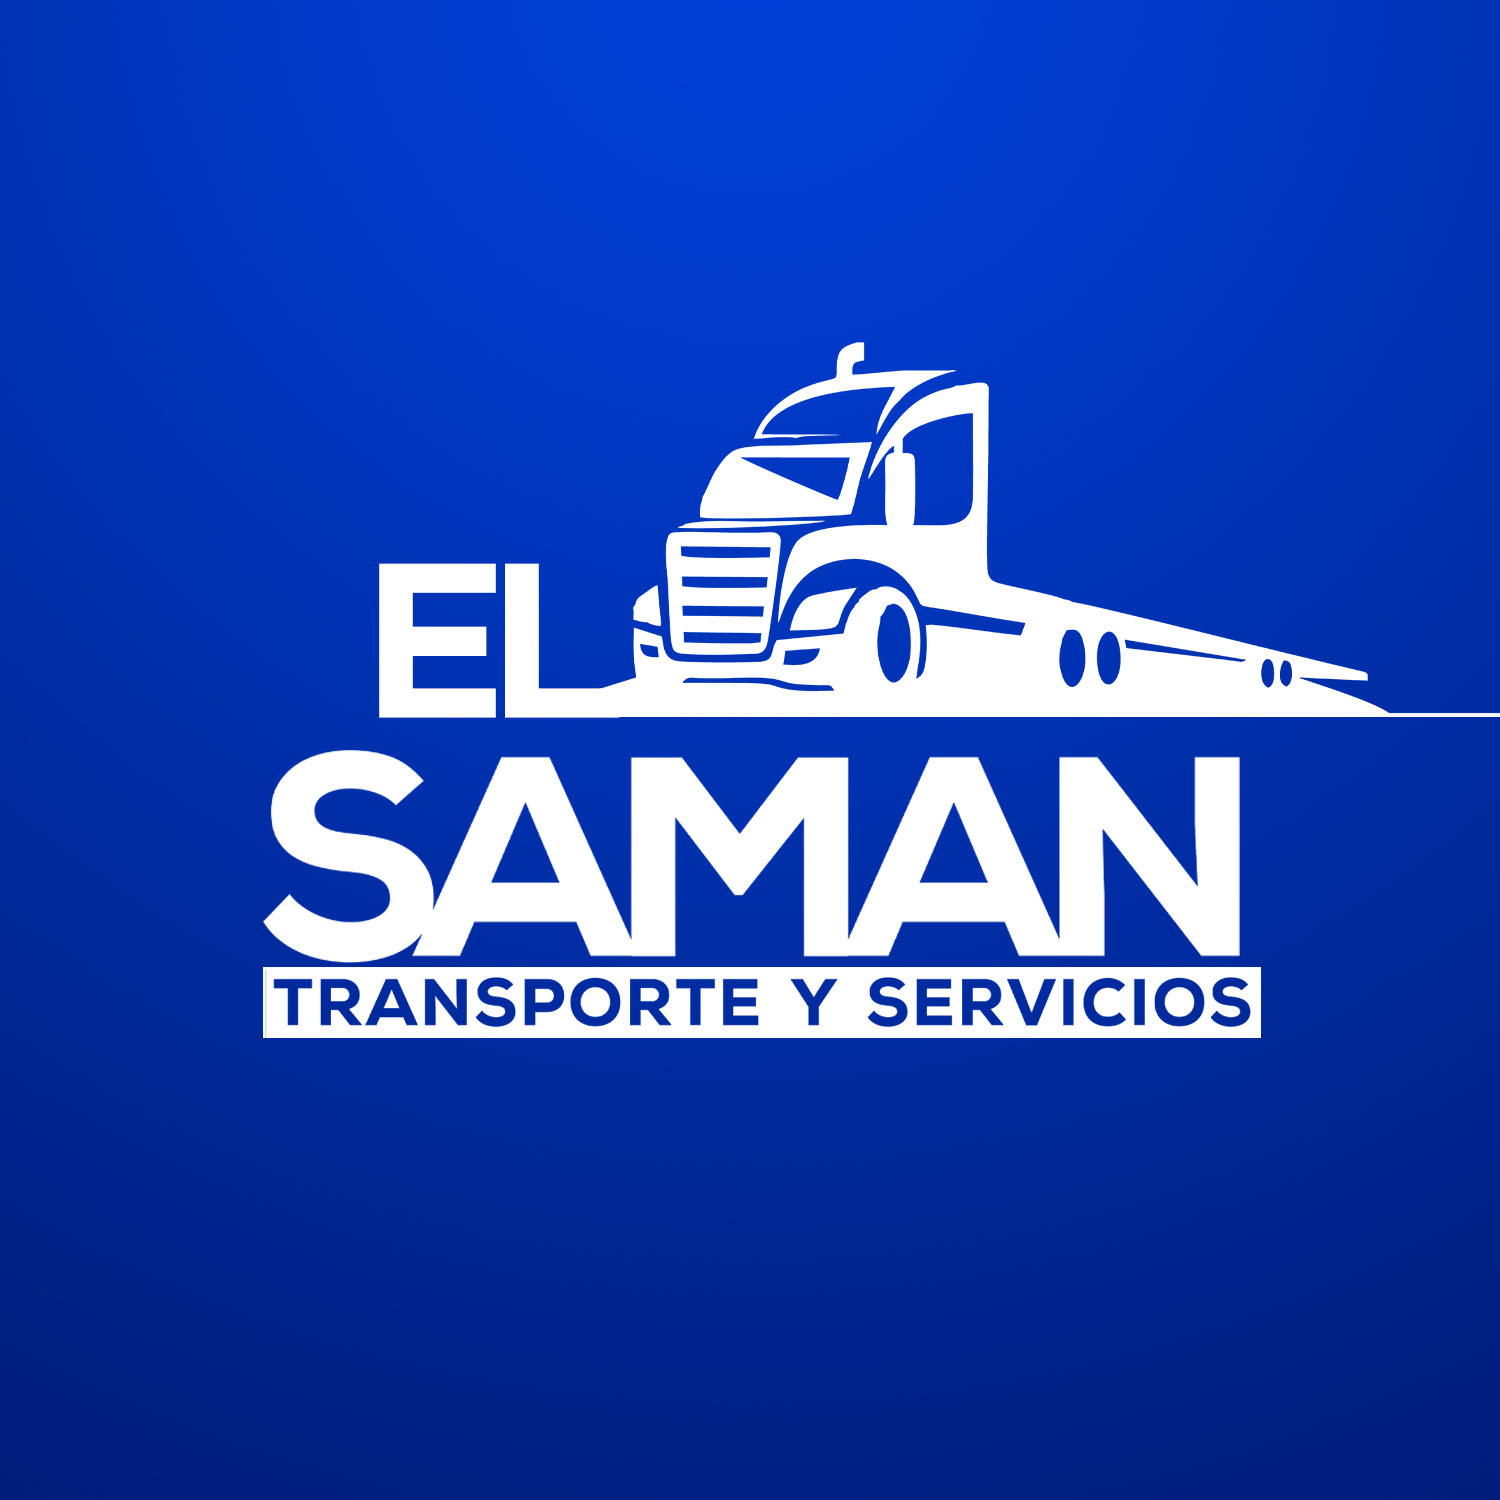 (c) Transporteelsaman.com